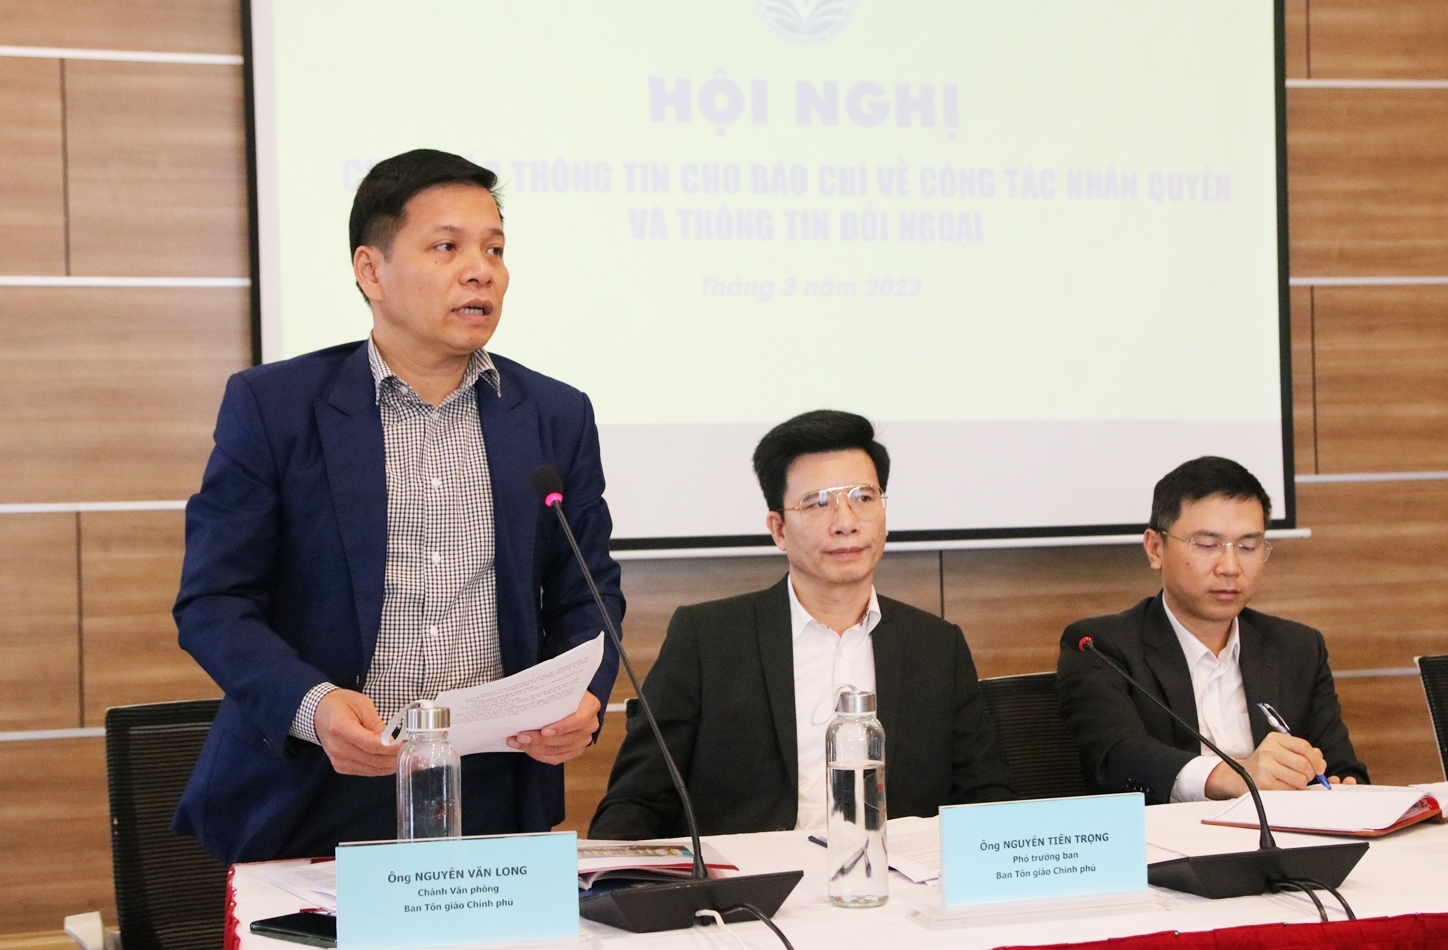 Ông Nguyễn Văn Long - Chánh Văn phòng Ban Tôn giáo Chính phủ báo cáo tại Hội nghị